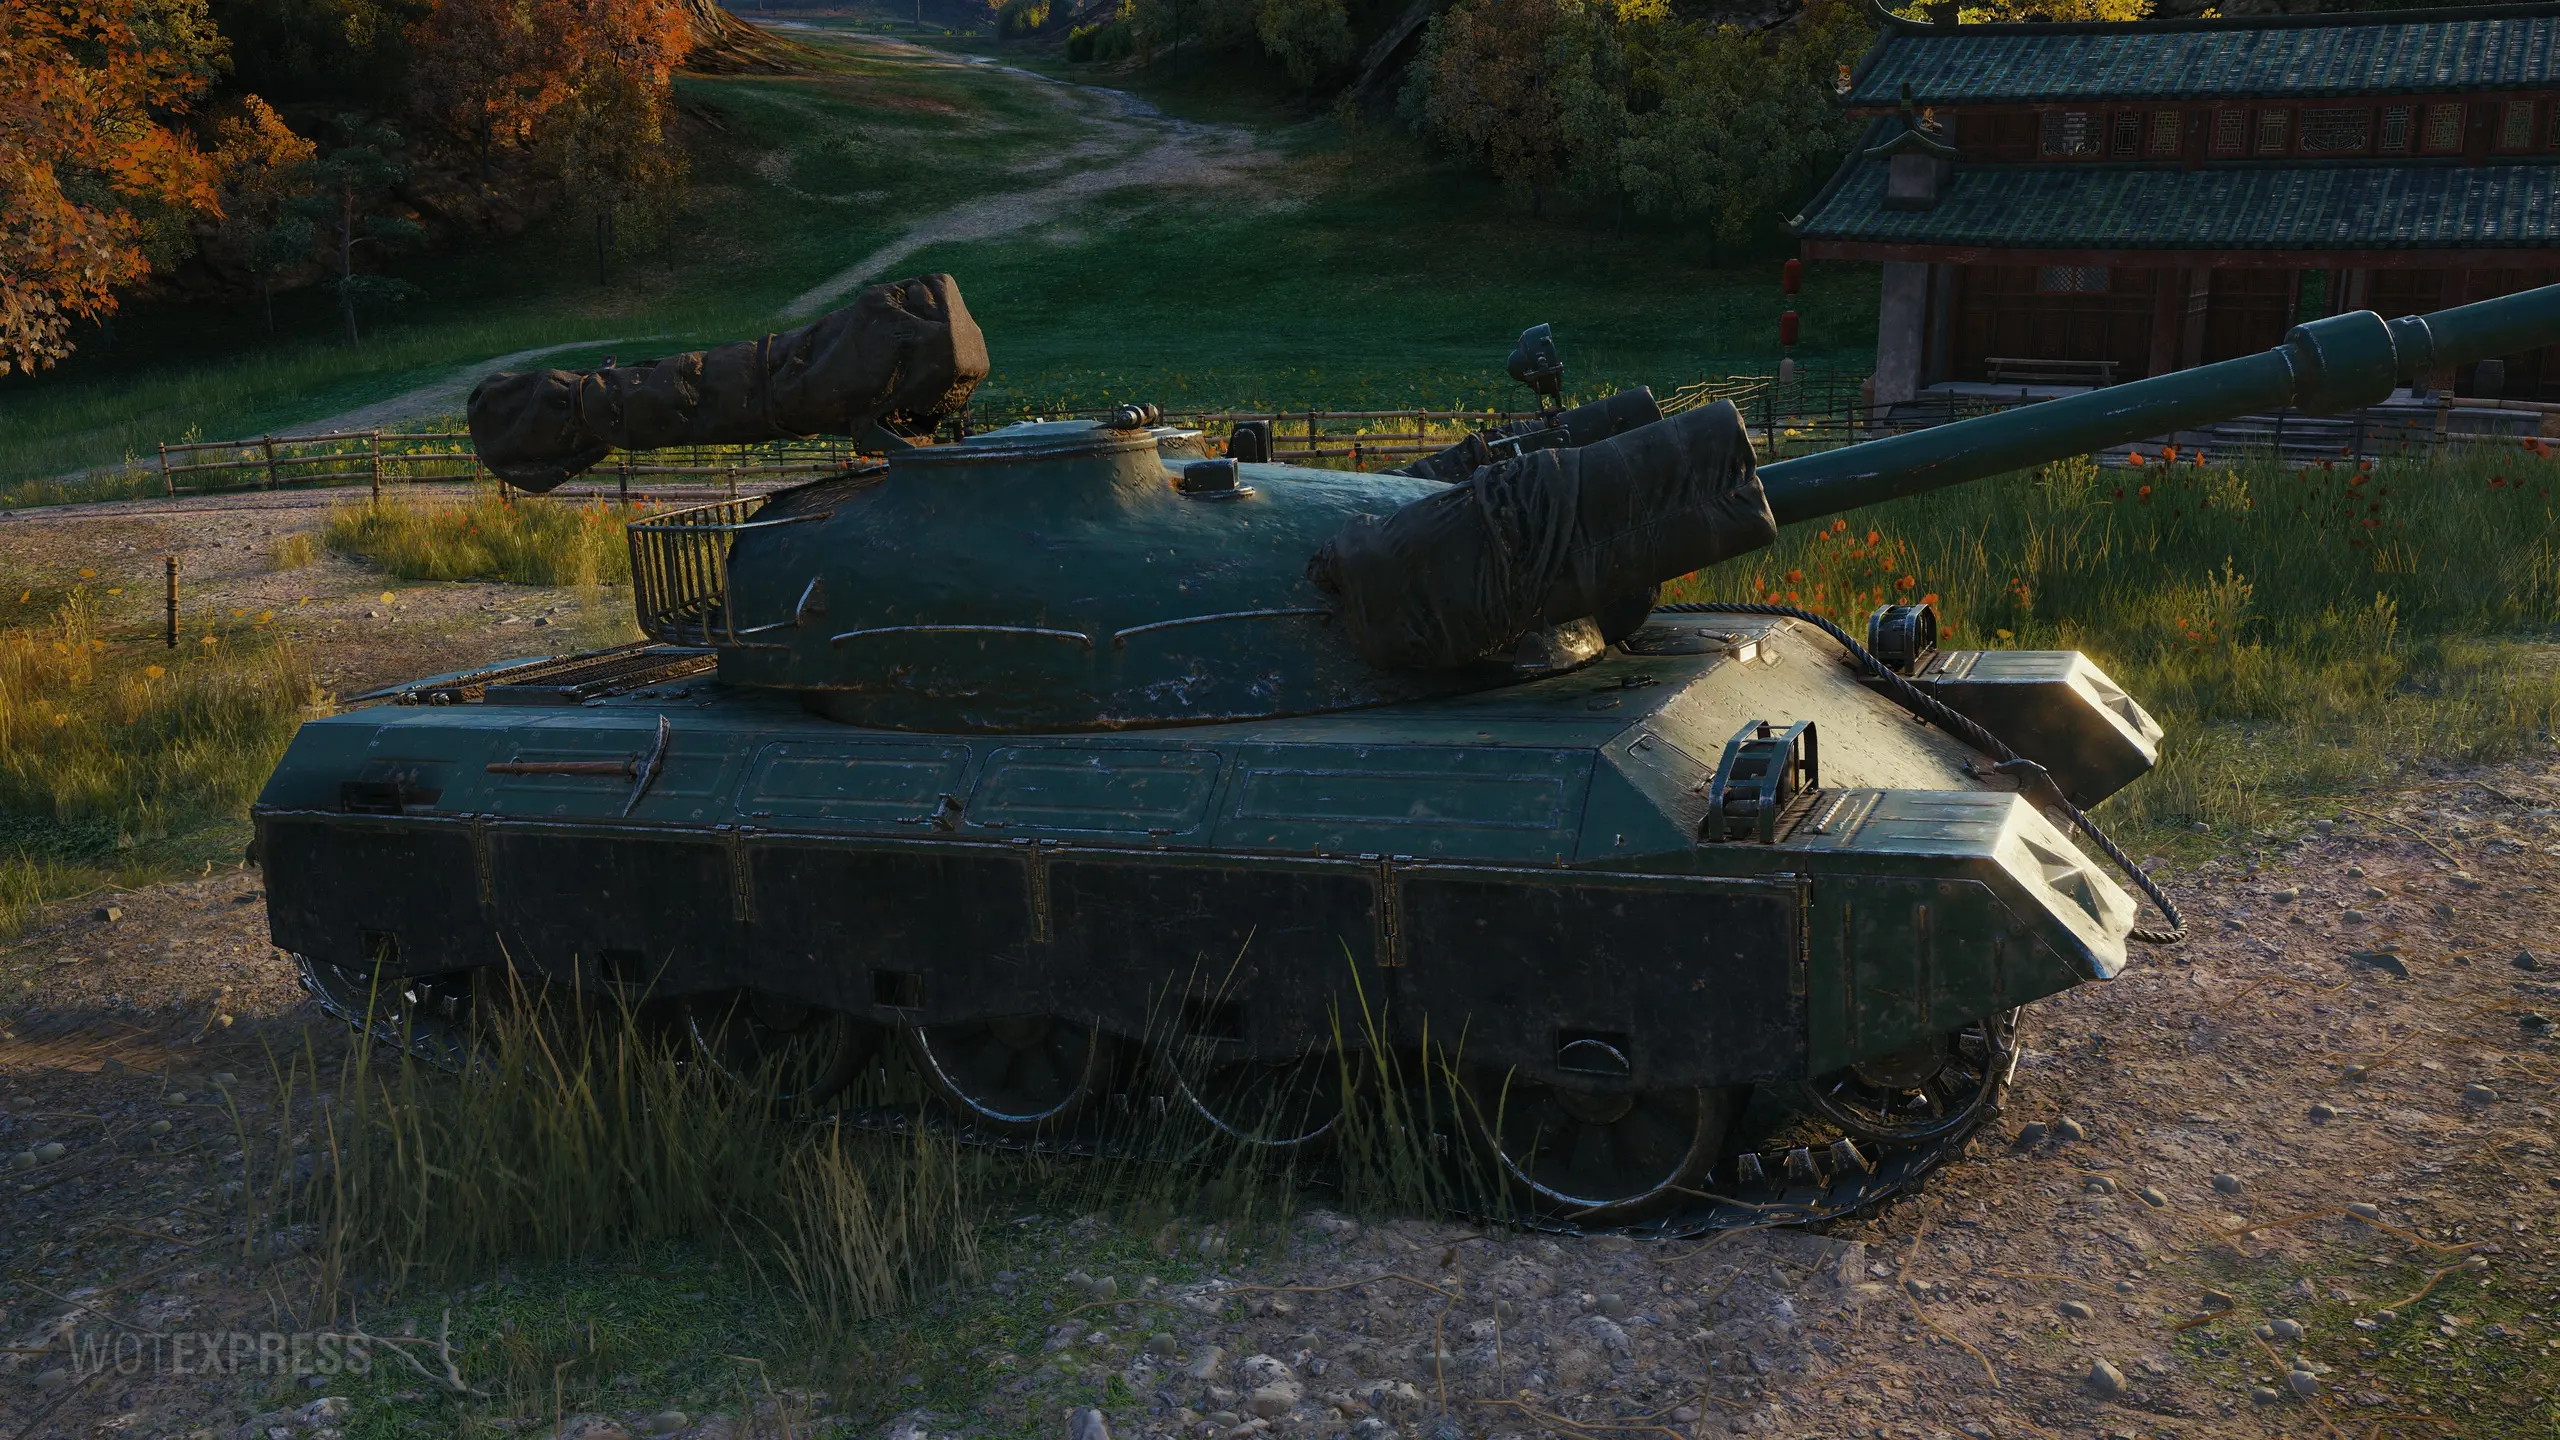 122 wot. 122 TM WOT. Китайский танк 122 ТМ. Ворлд оф танк 122тм. Танк 122 ТМ В World of Tanks.